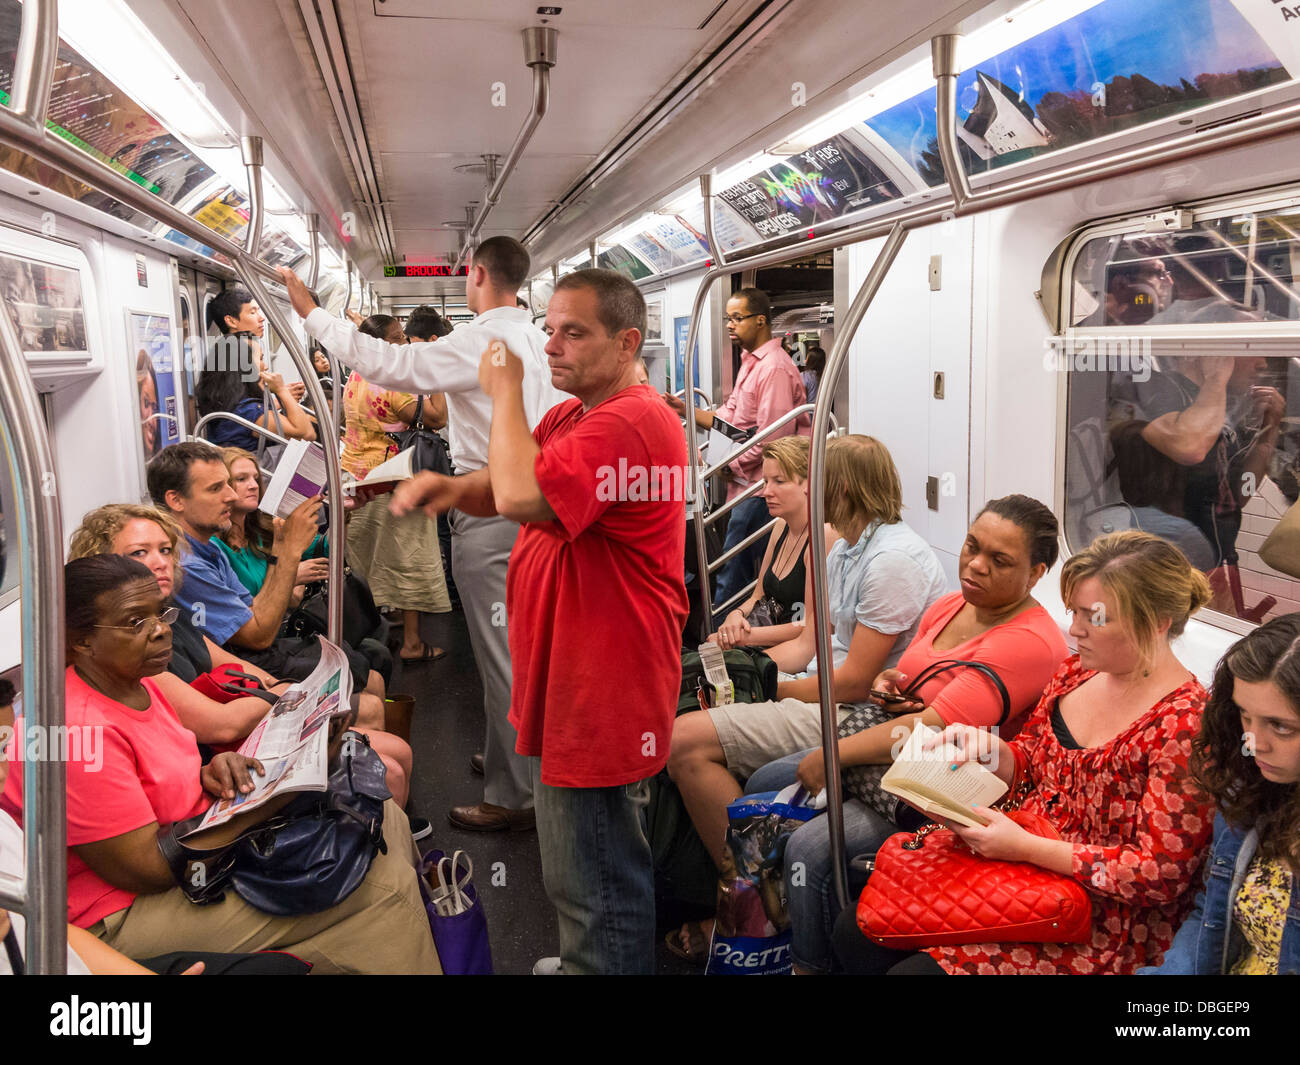 Métro de New York - les gens sur un train chanté au New York City NYC Subway à l'heure de pointe. Banque D'Images